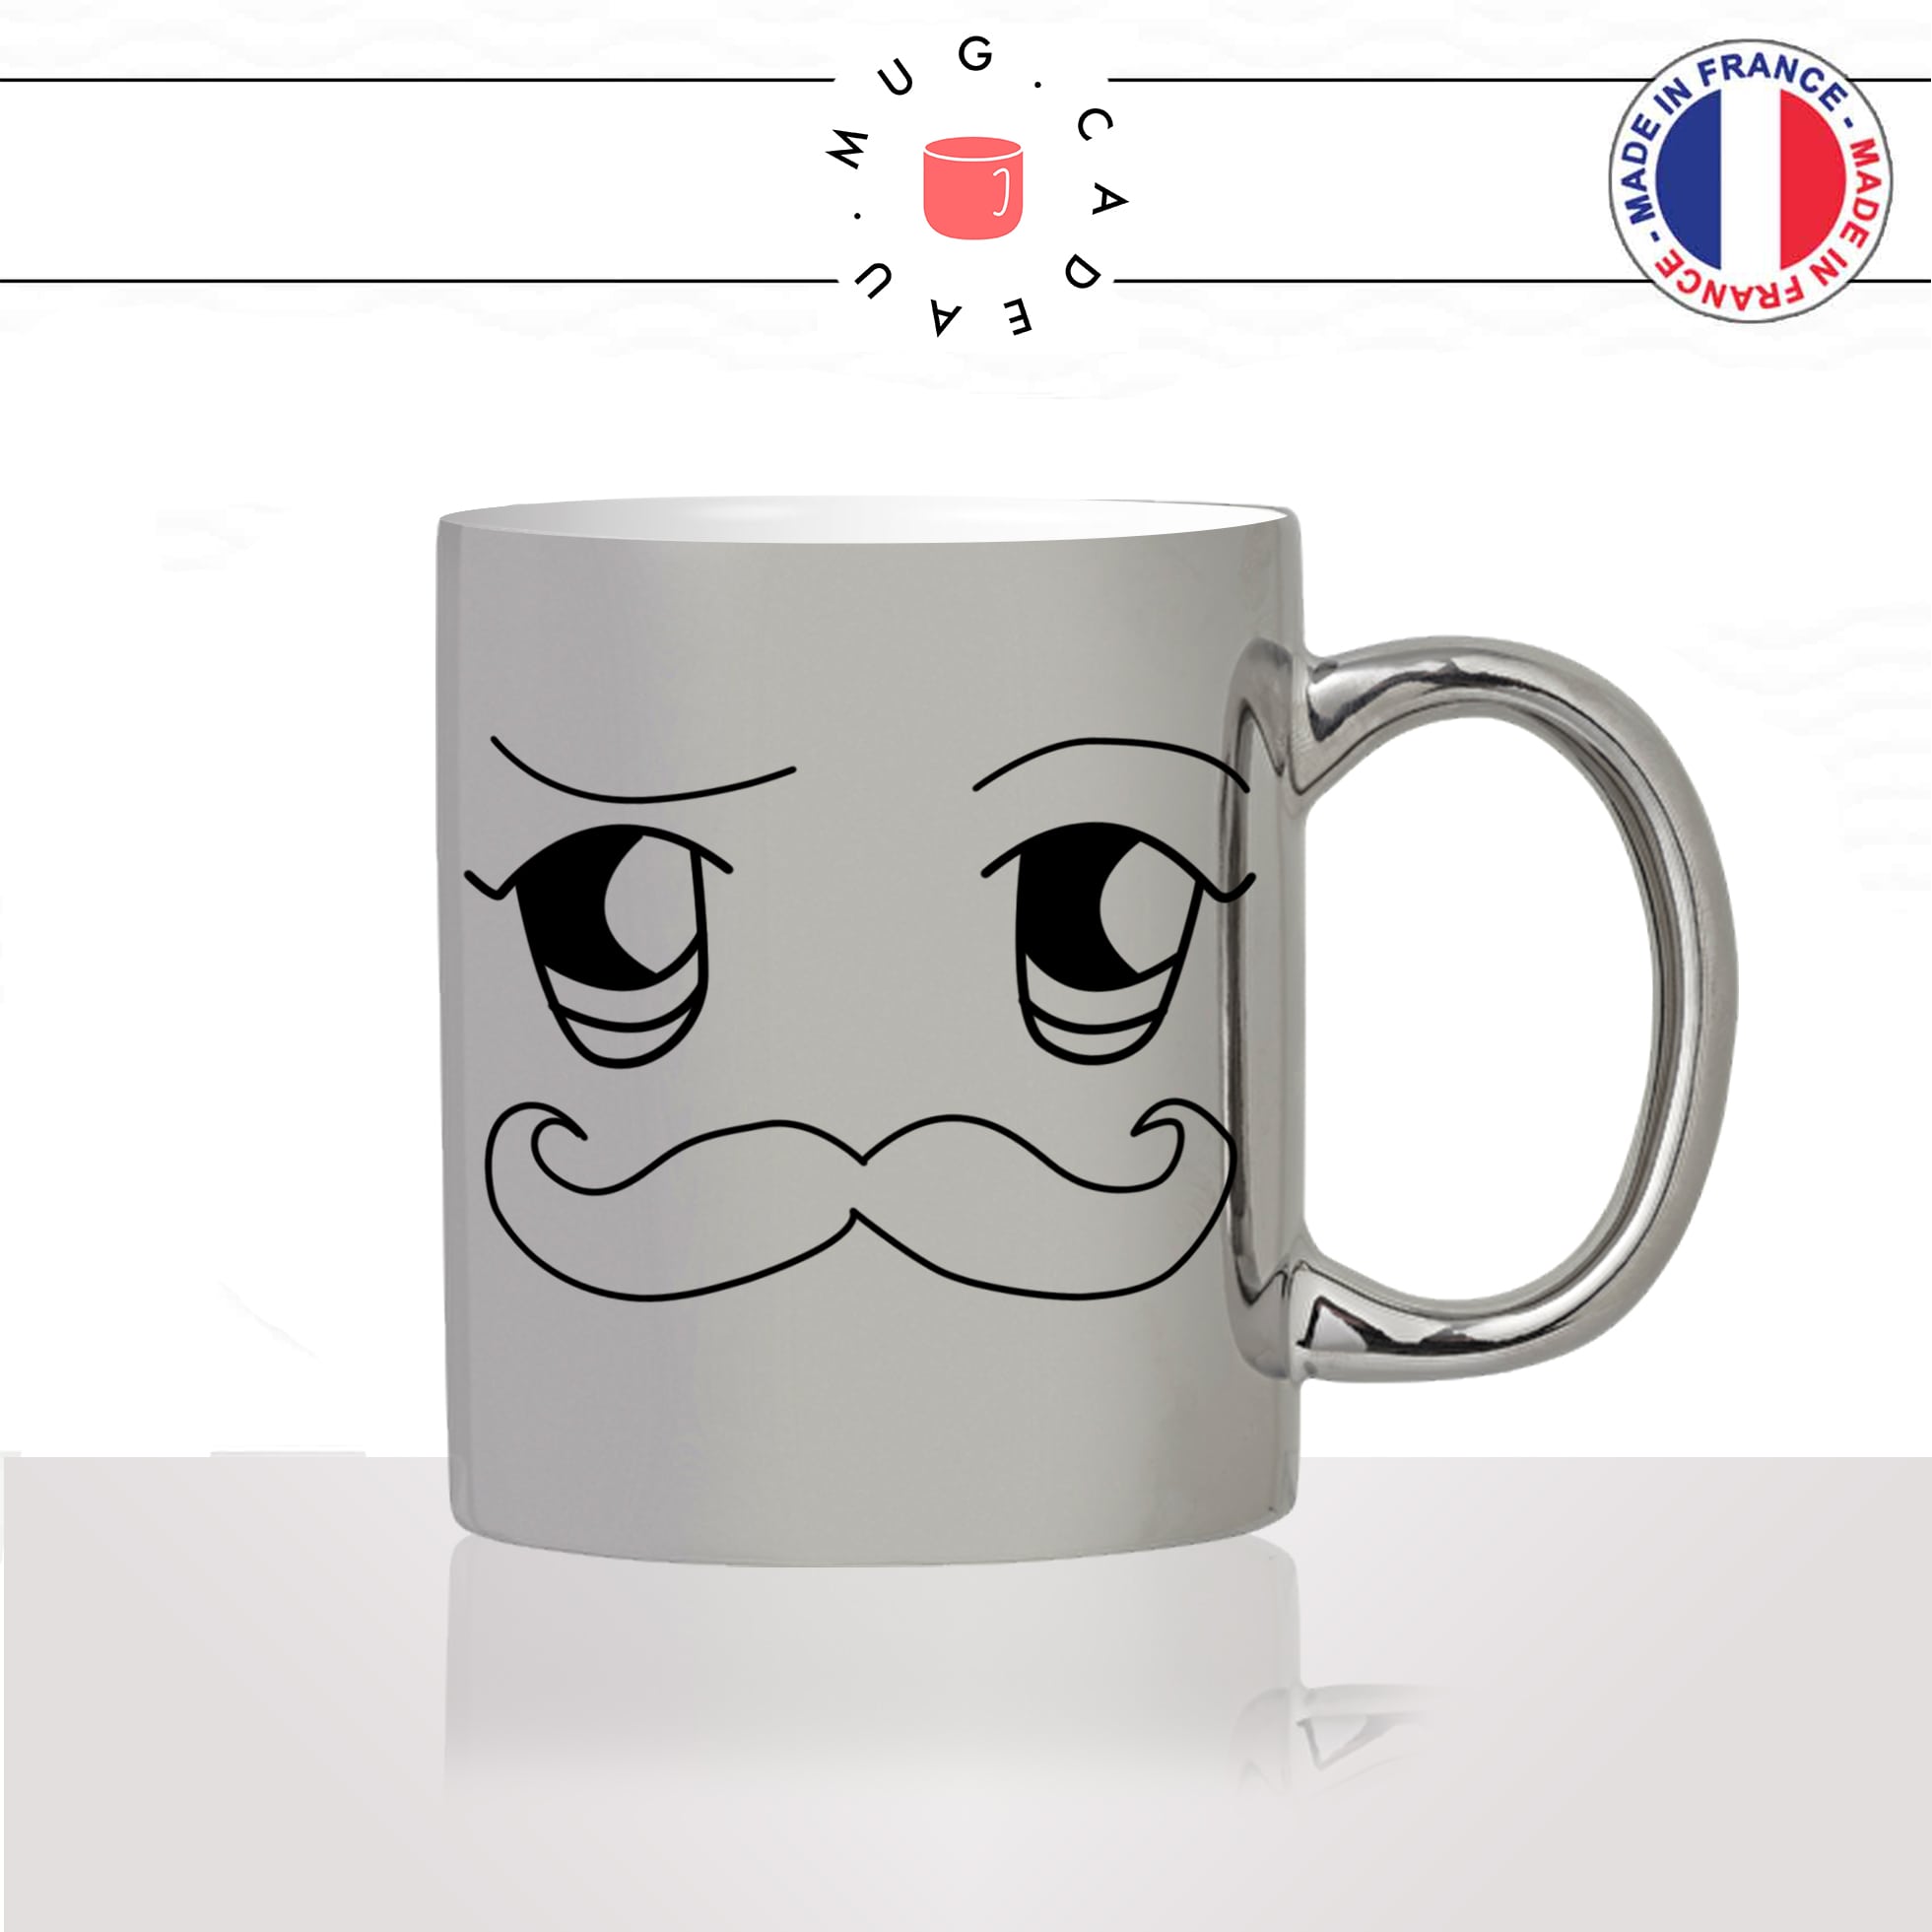 mug-tasse-silver-argenté-argent-moustache-homme-kawaii-dessin-mignon-animal-noir-fun-café-thé-idée-cadeau-original-personnalisé2-min